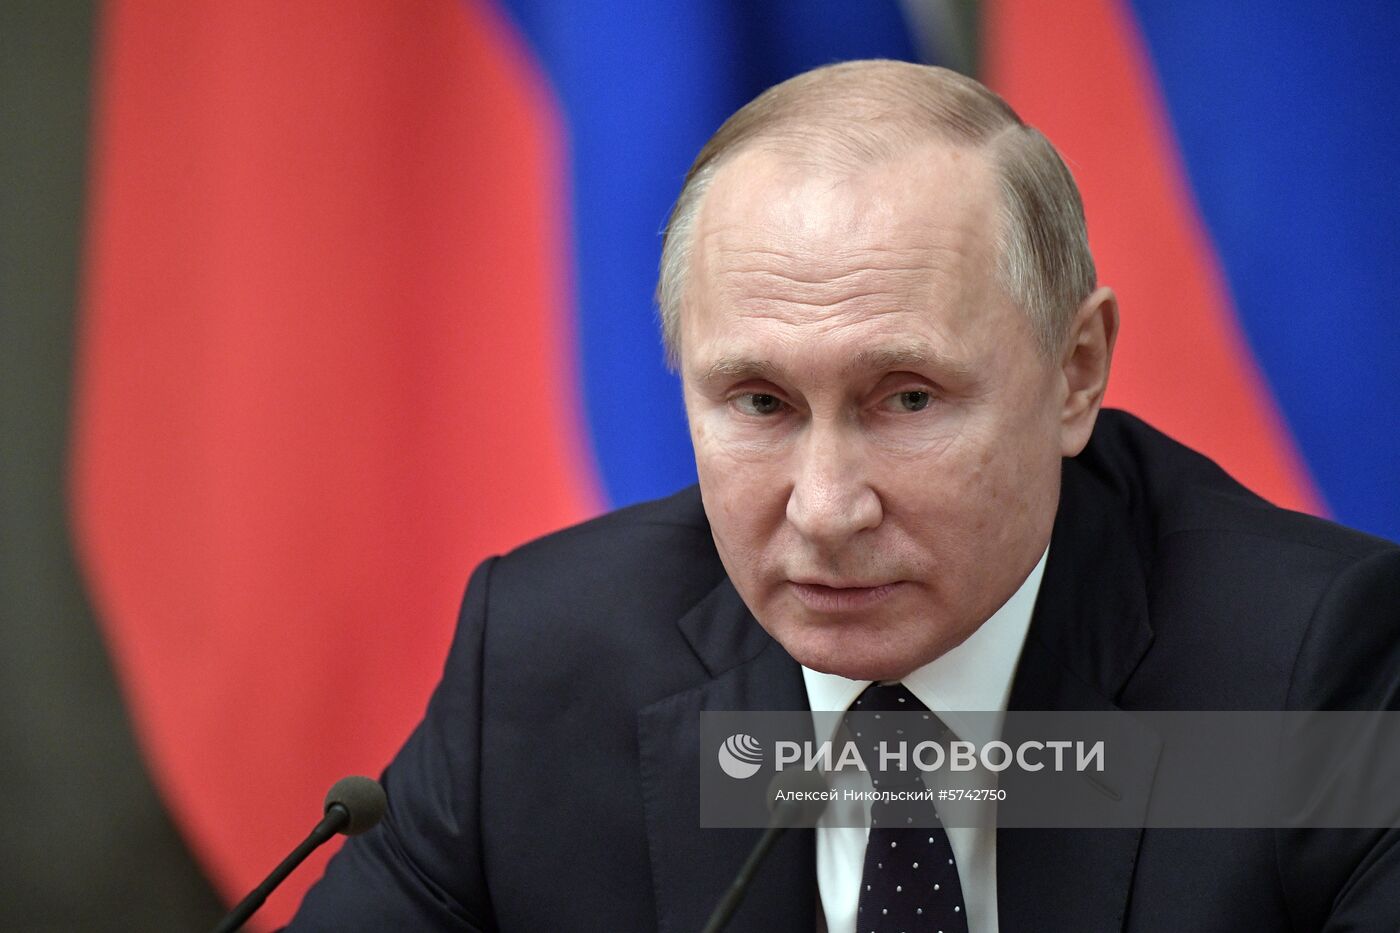 Президент РФ В. Путин провел встречу с членами правительства РФ